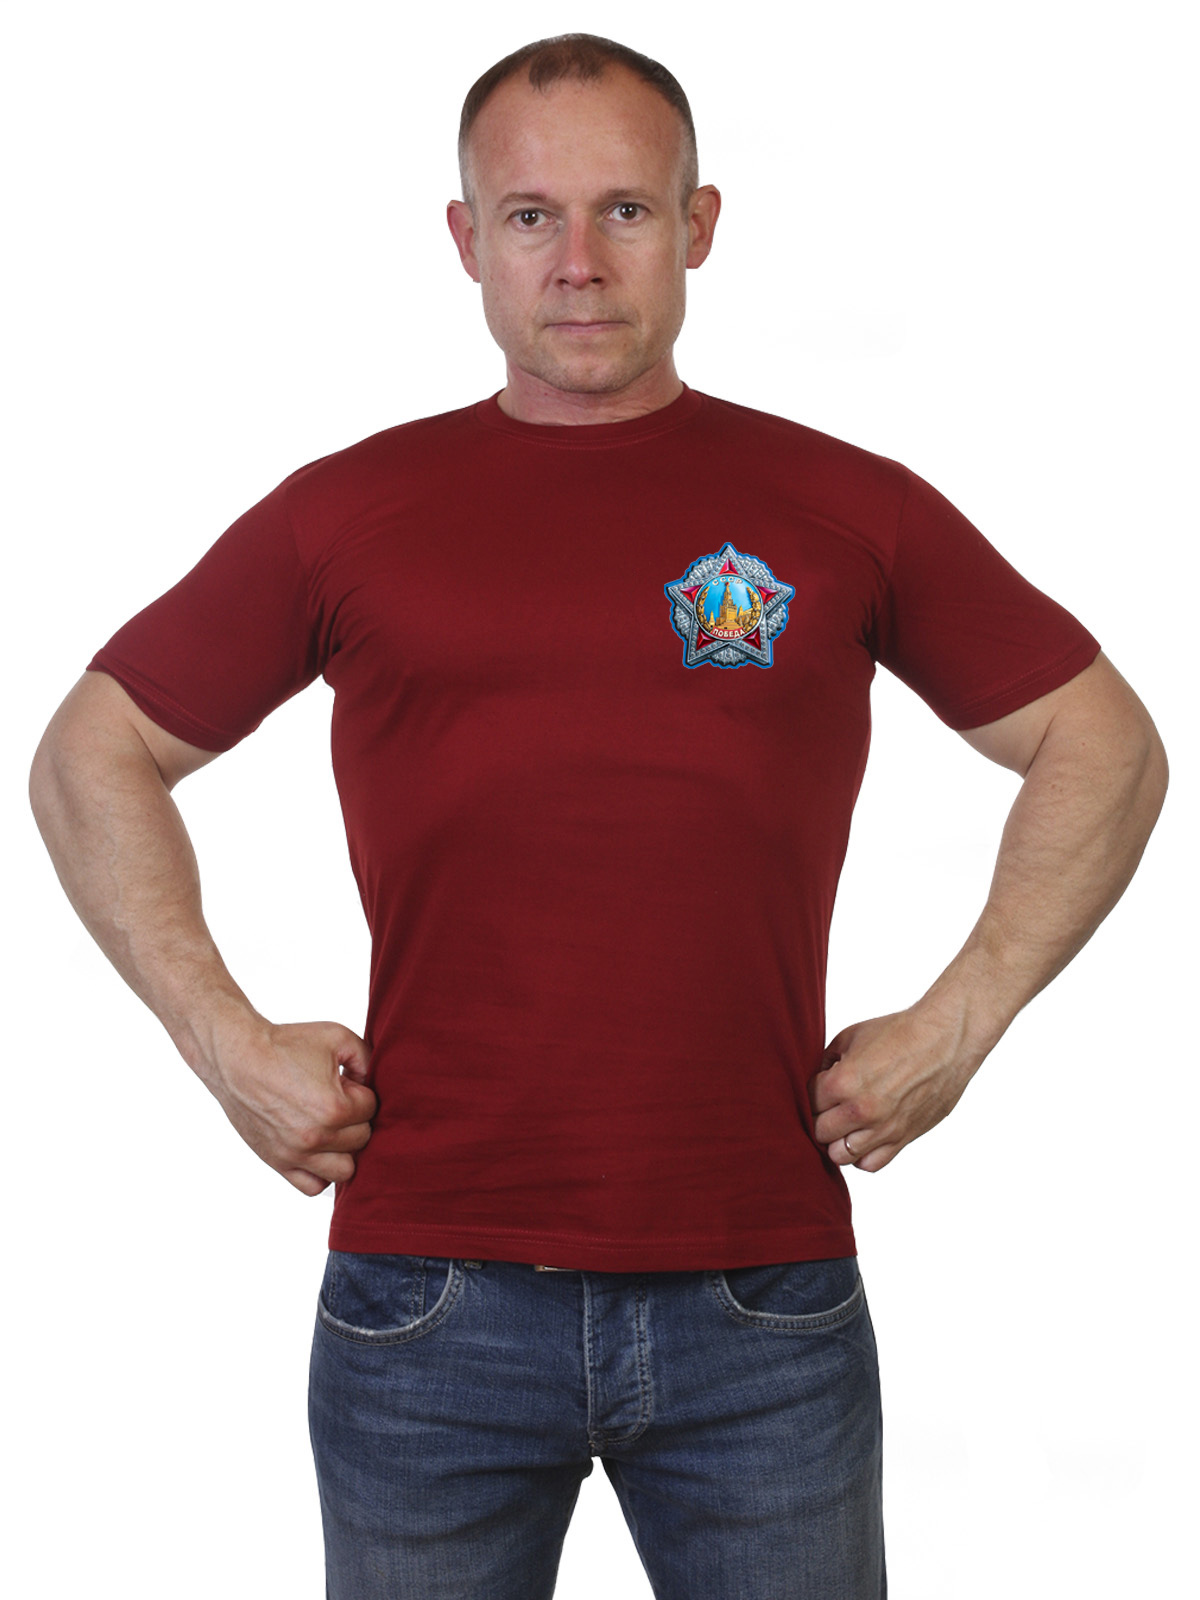 Патриотическая футболка с орденом Победы 